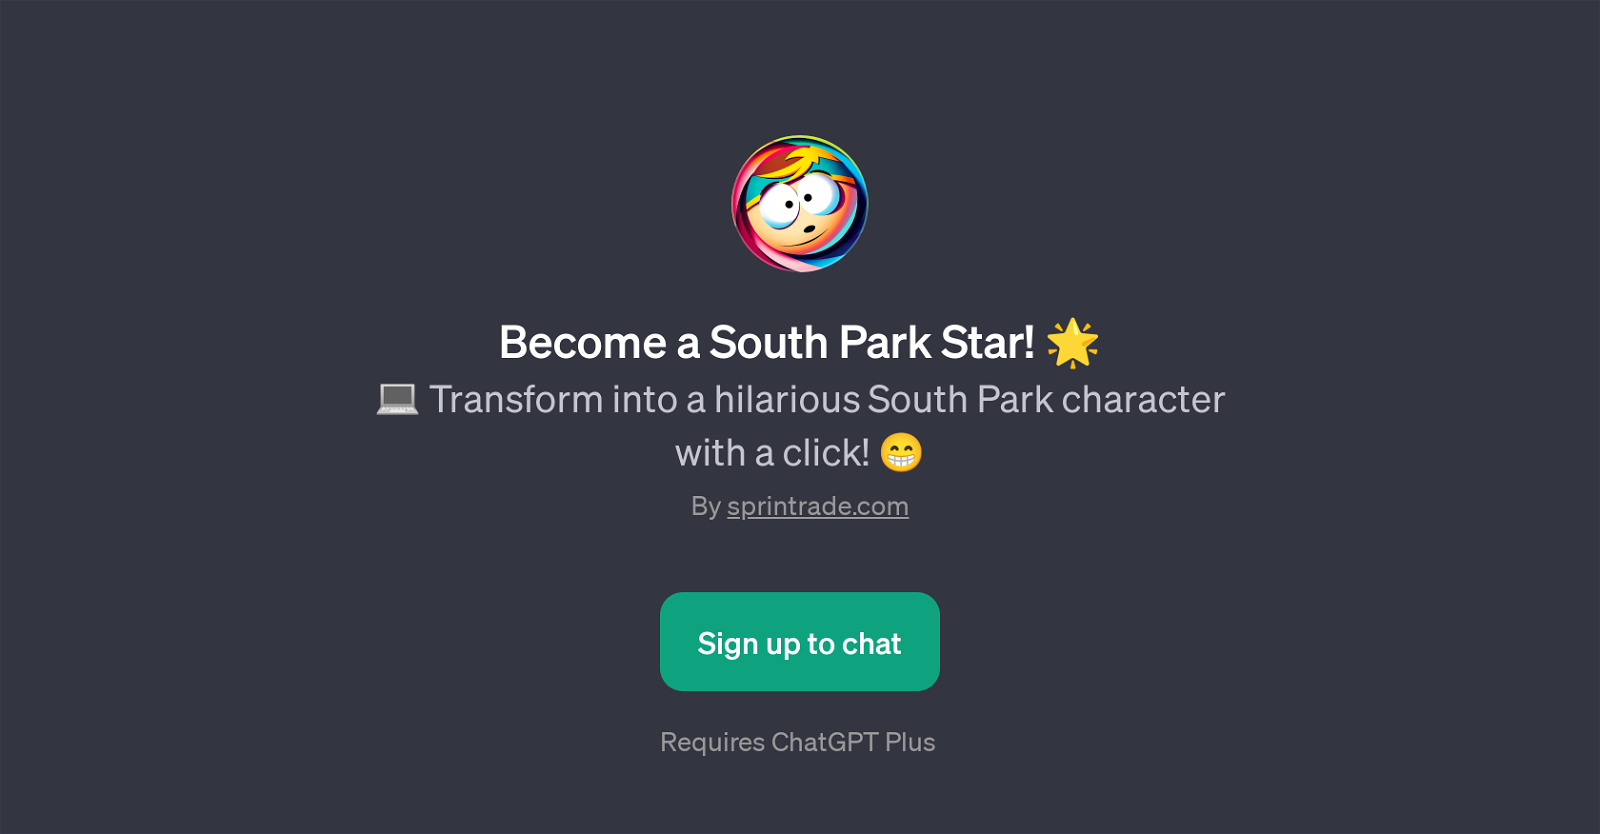 Become a South Park Star website